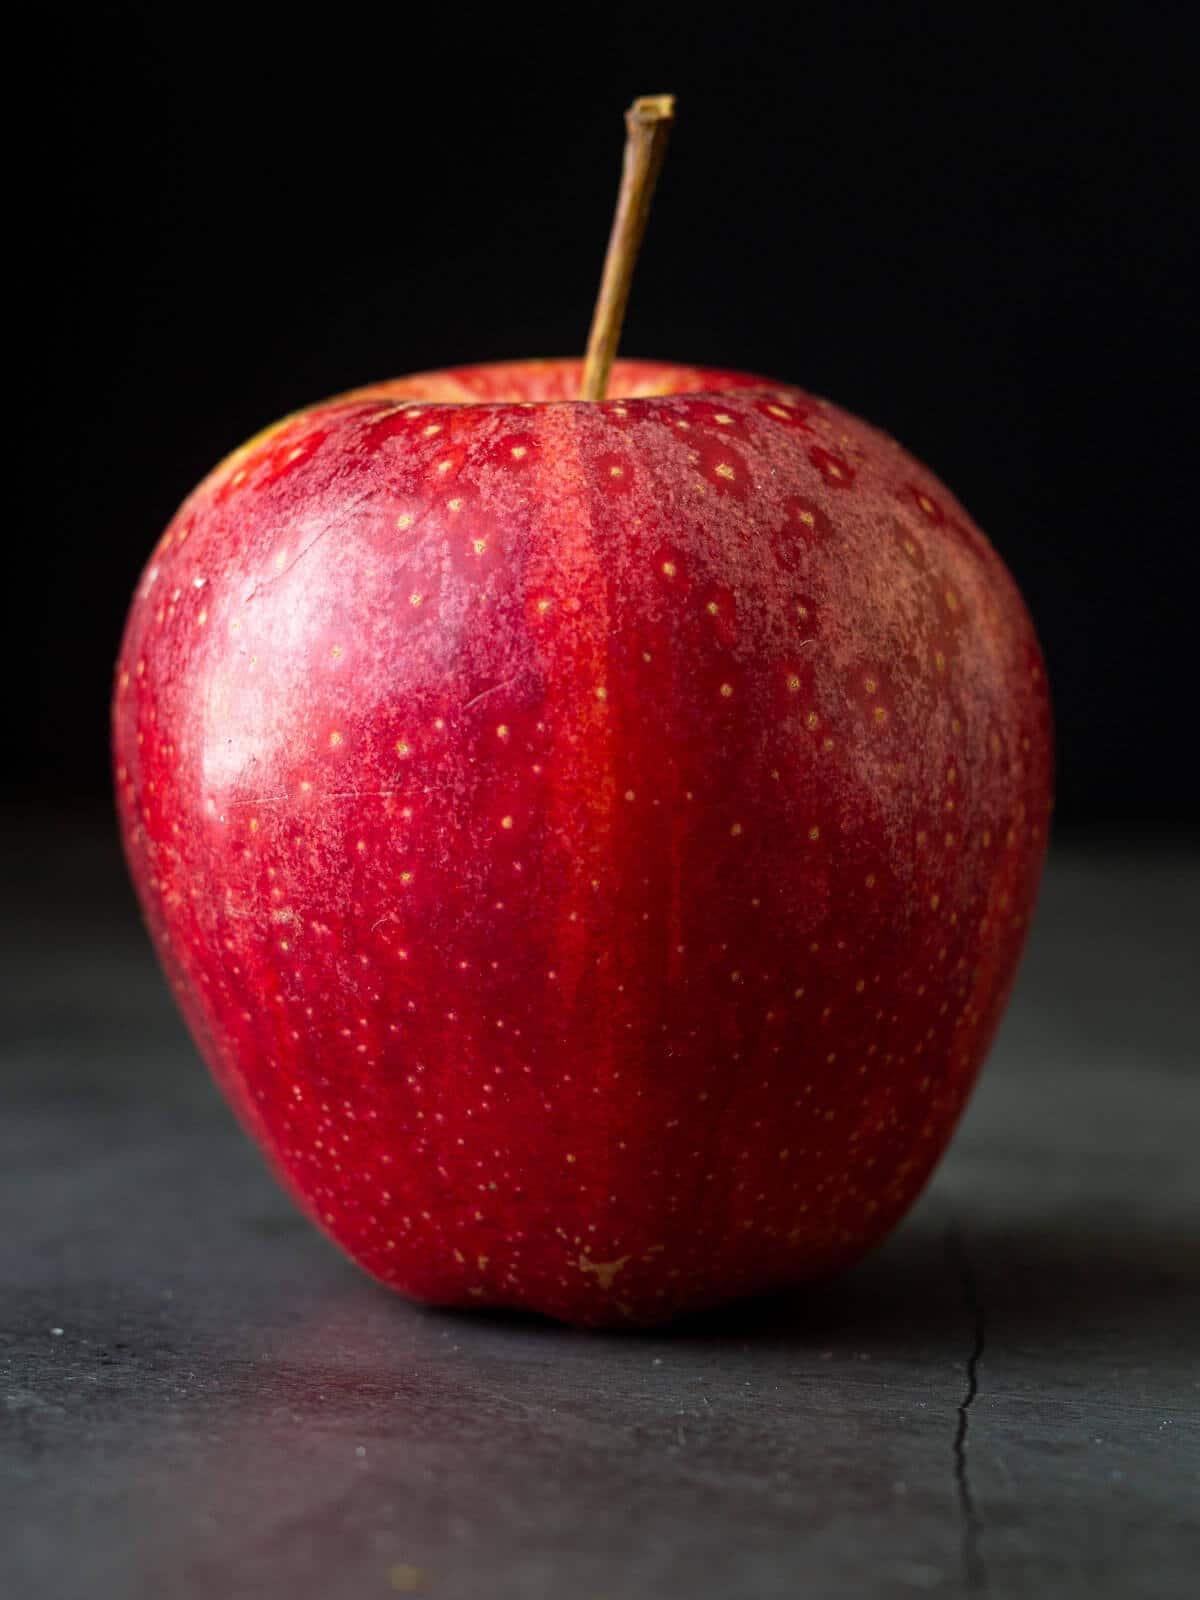 manzana roja sobre fondo negro.